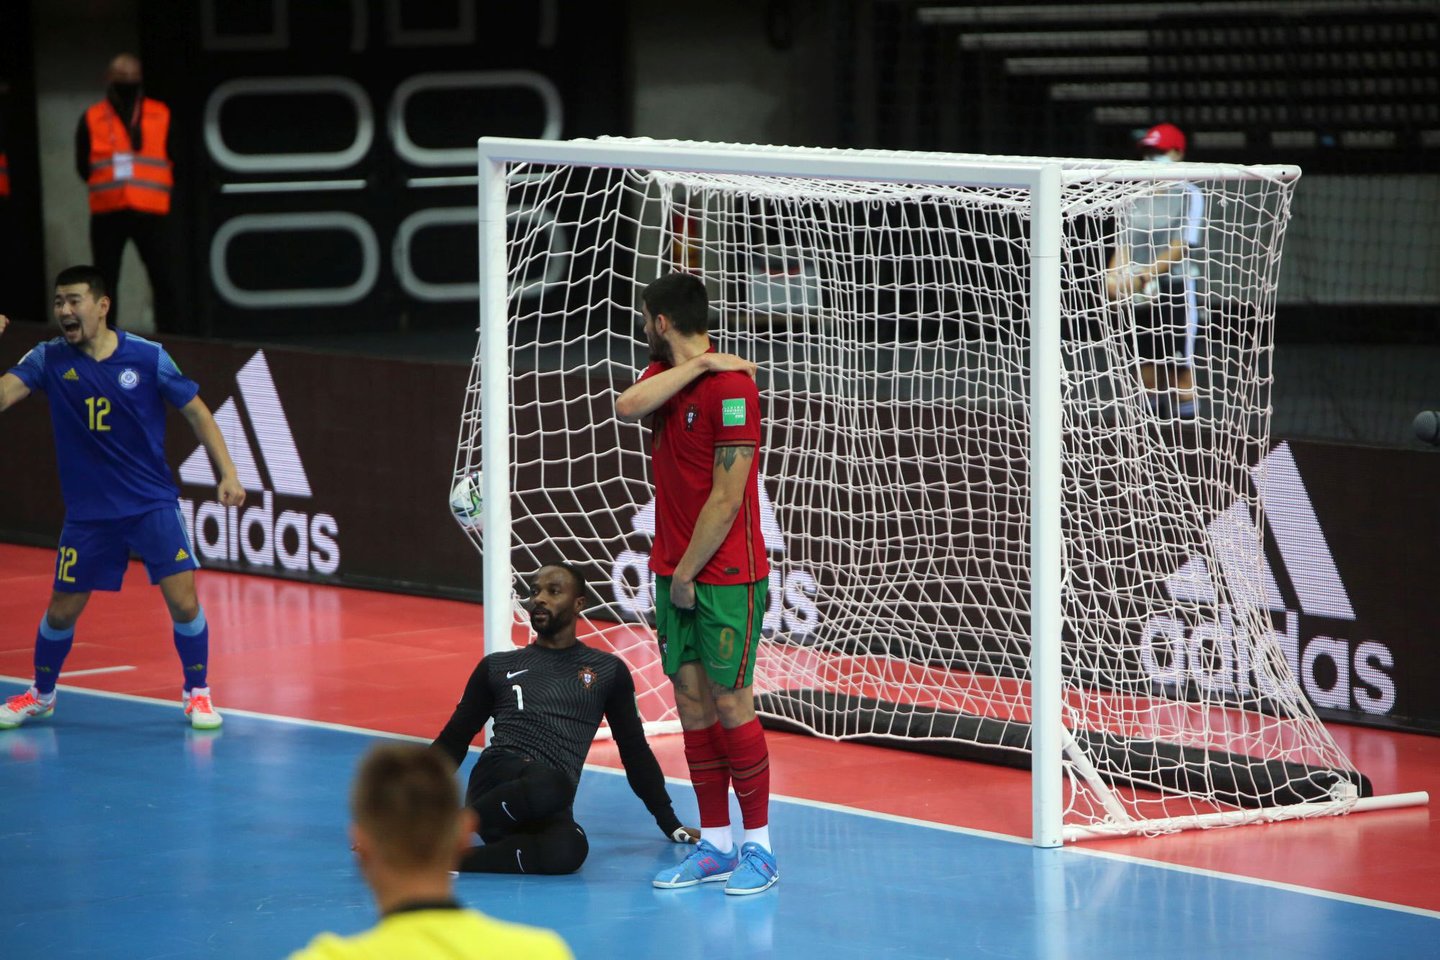  Pasaulio salės futbolo čempionato pusfinalis Portugalija - Kazachstanas.<br> M. Patašius nuotr.